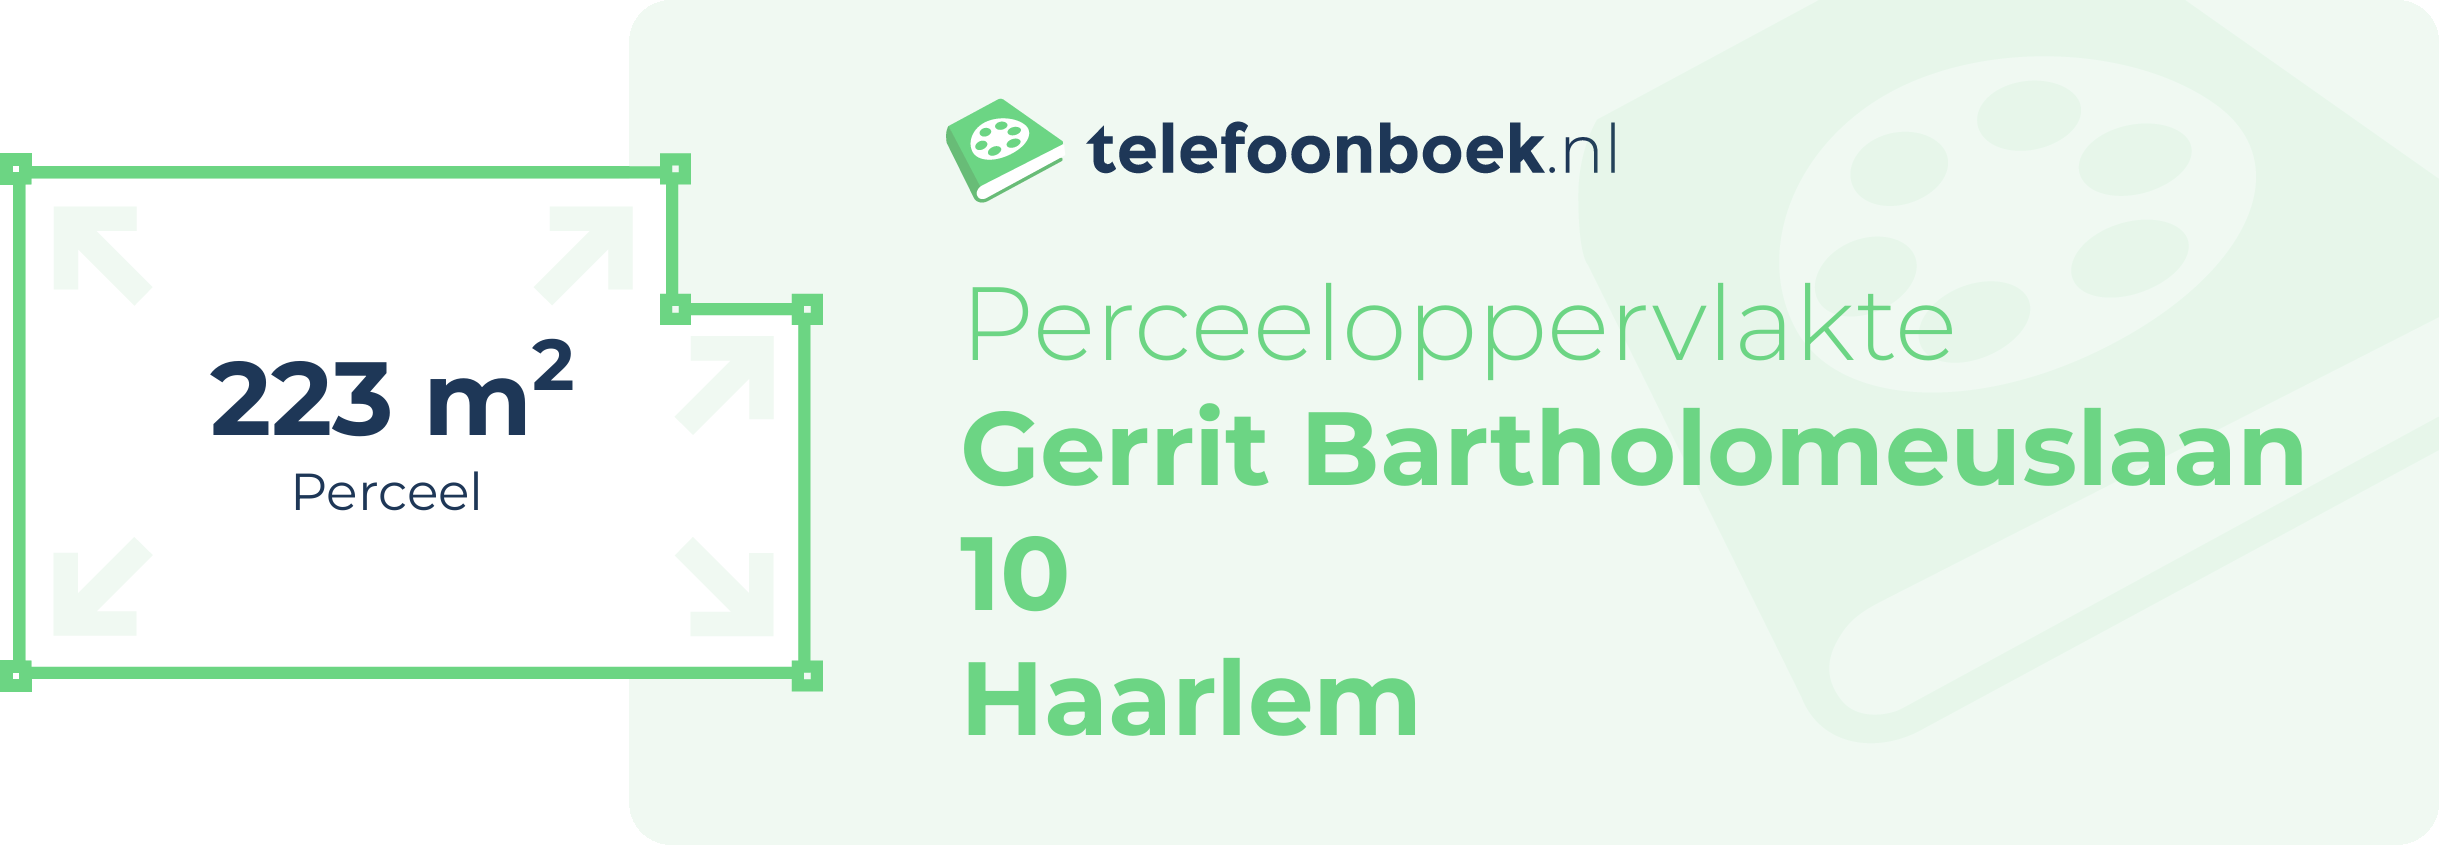 Perceeloppervlakte Gerrit Bartholomeuslaan 10 Haarlem